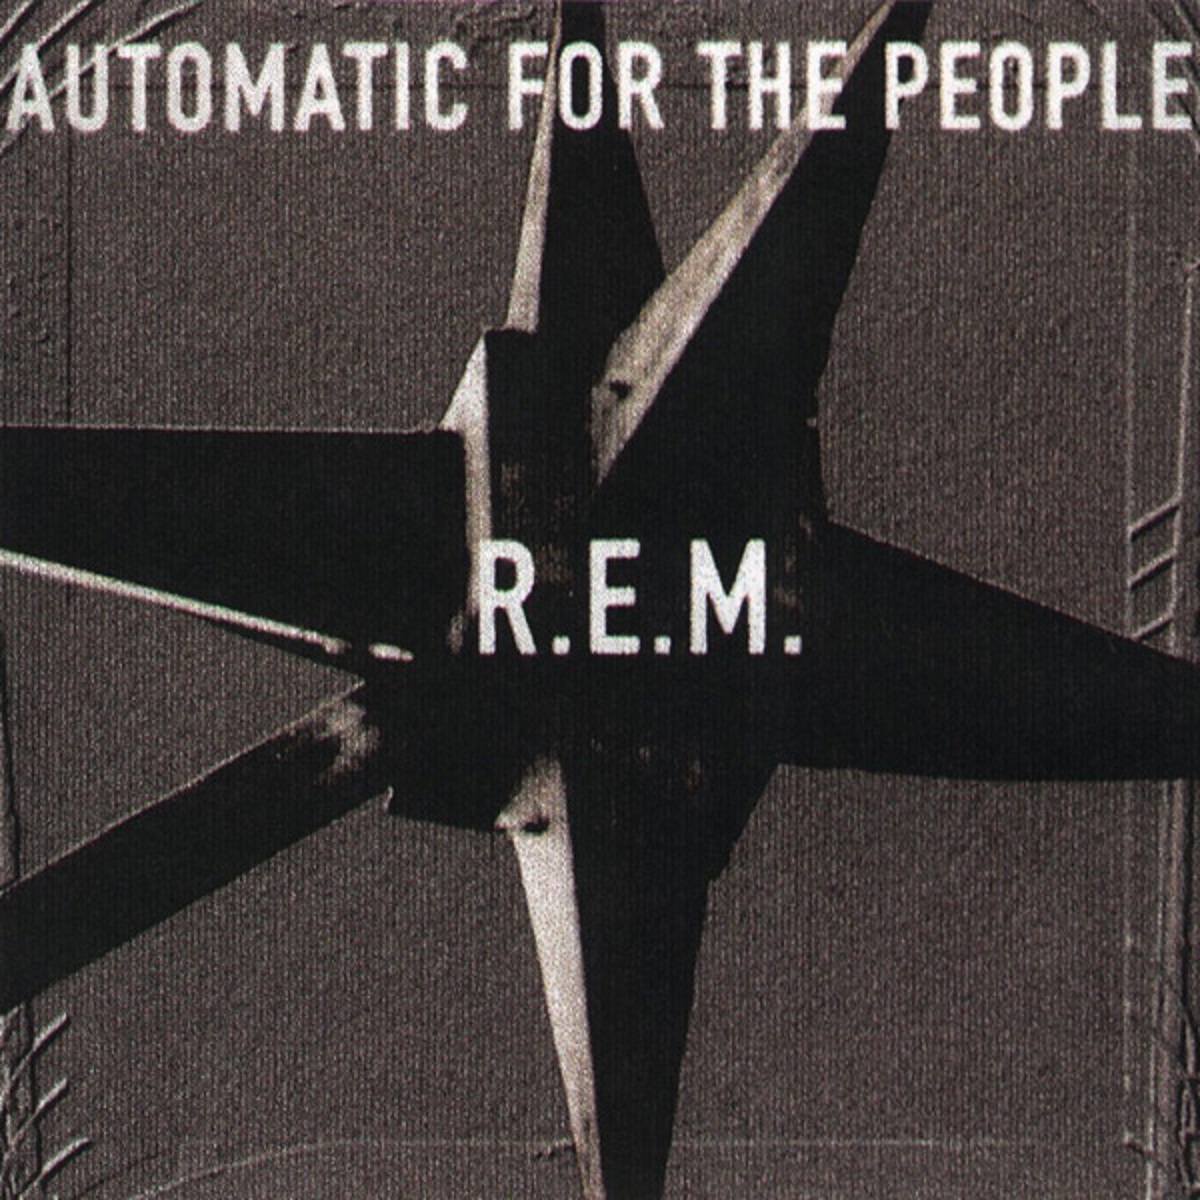 Couverture de l'album Automatic for the People de R.E.M.